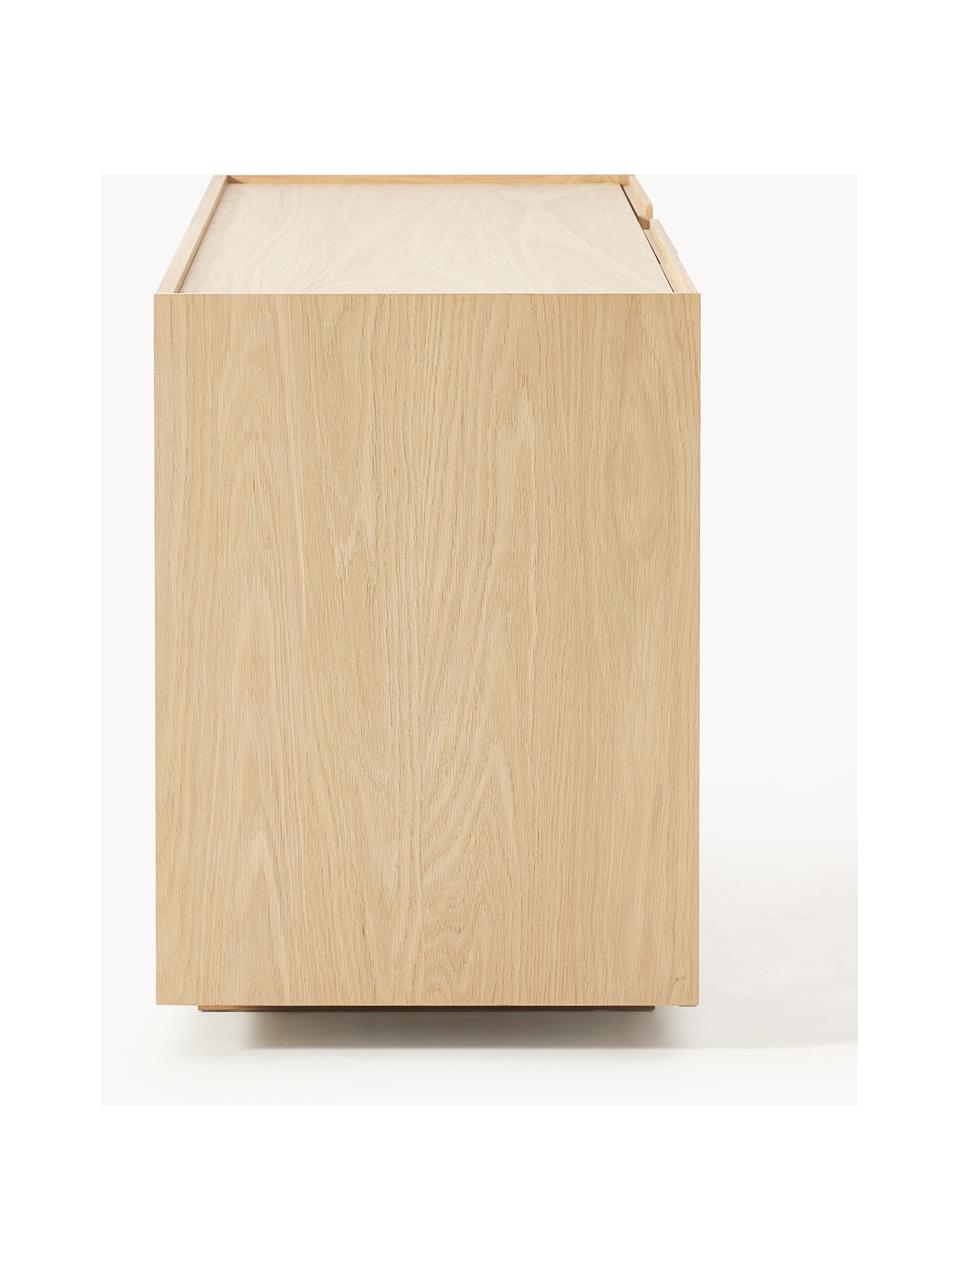 Dřevěná skříňka Larsen, Lakované dubové dřevo, Š 200 cm, V 67 cm